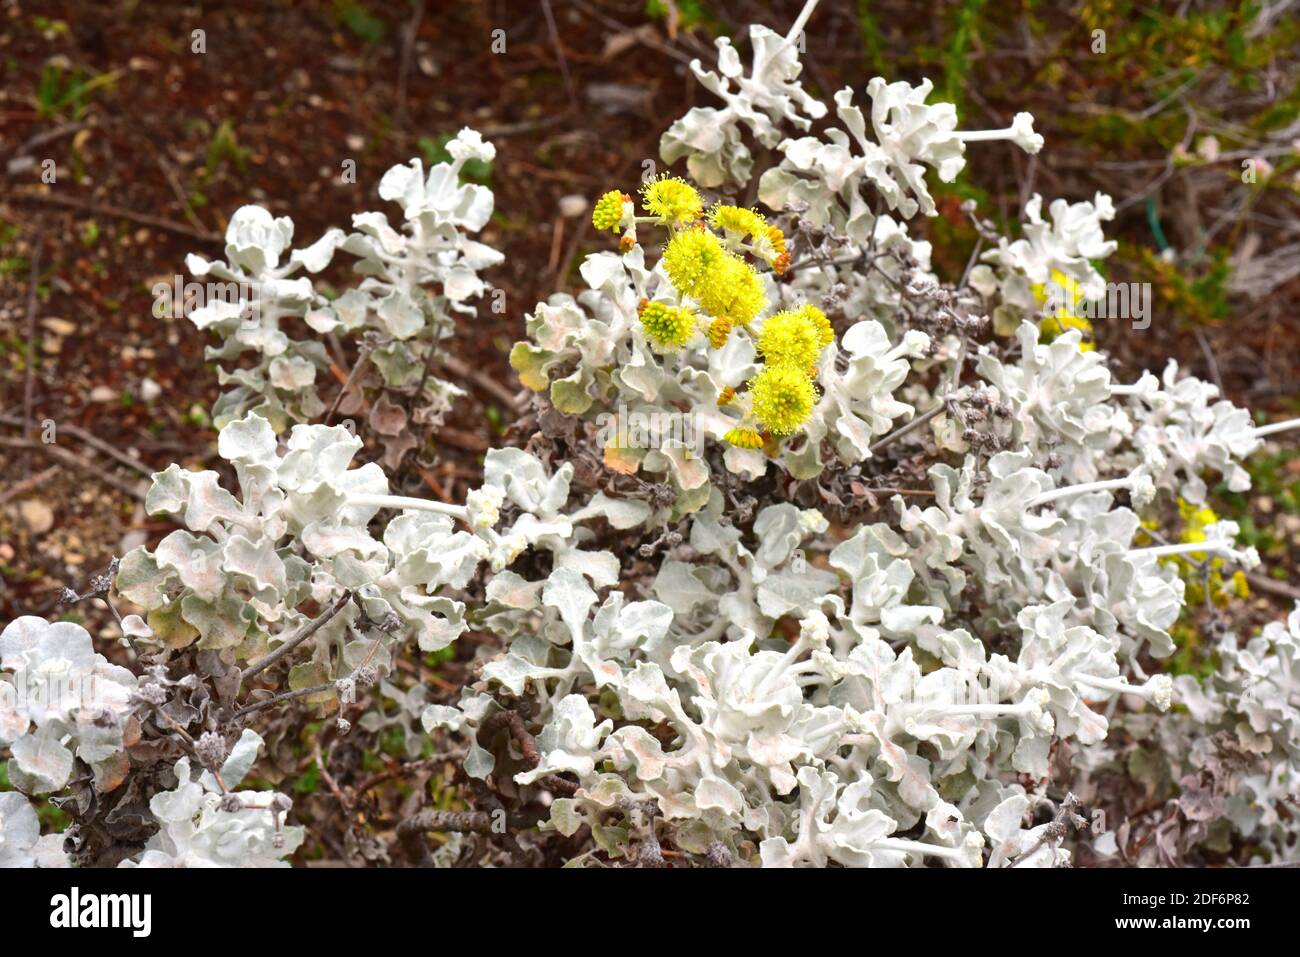 Conejo Buchweizen oder Safran Buchweizen ( Eriogonum crocatum) ist ein Strauch endemisch in Conejo Valley, Kalifornien. Stockfoto